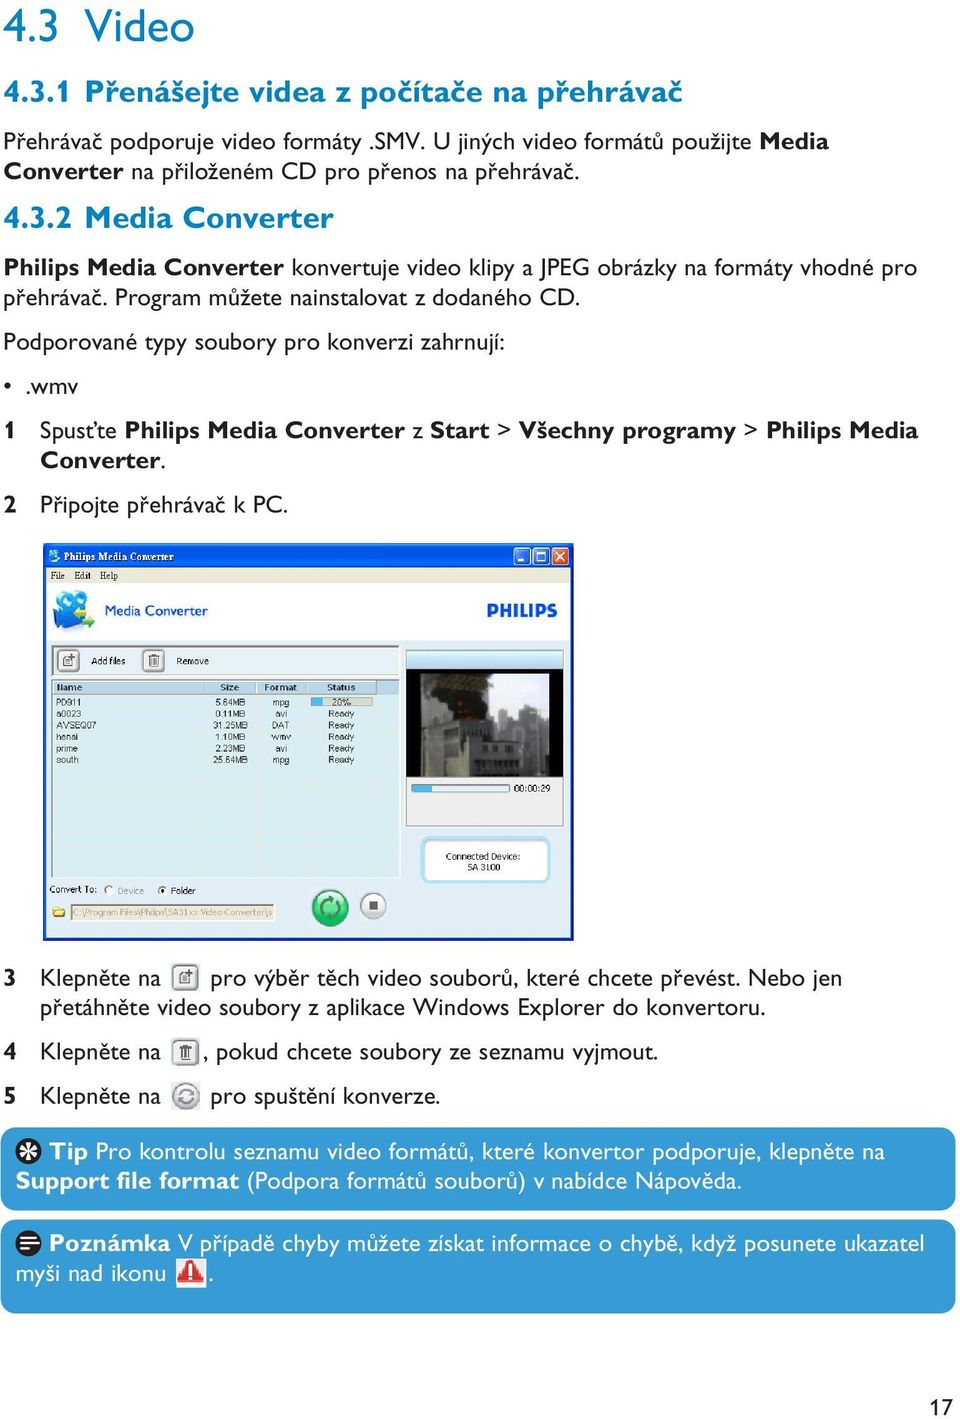 2 Připojte přehrávač k PC. 3 Klepněte na pro výběr těch video souborů, které chcete převést. Nebo jen přetáhněte video soubory z aplikace Windows Explorer do konvertoru.